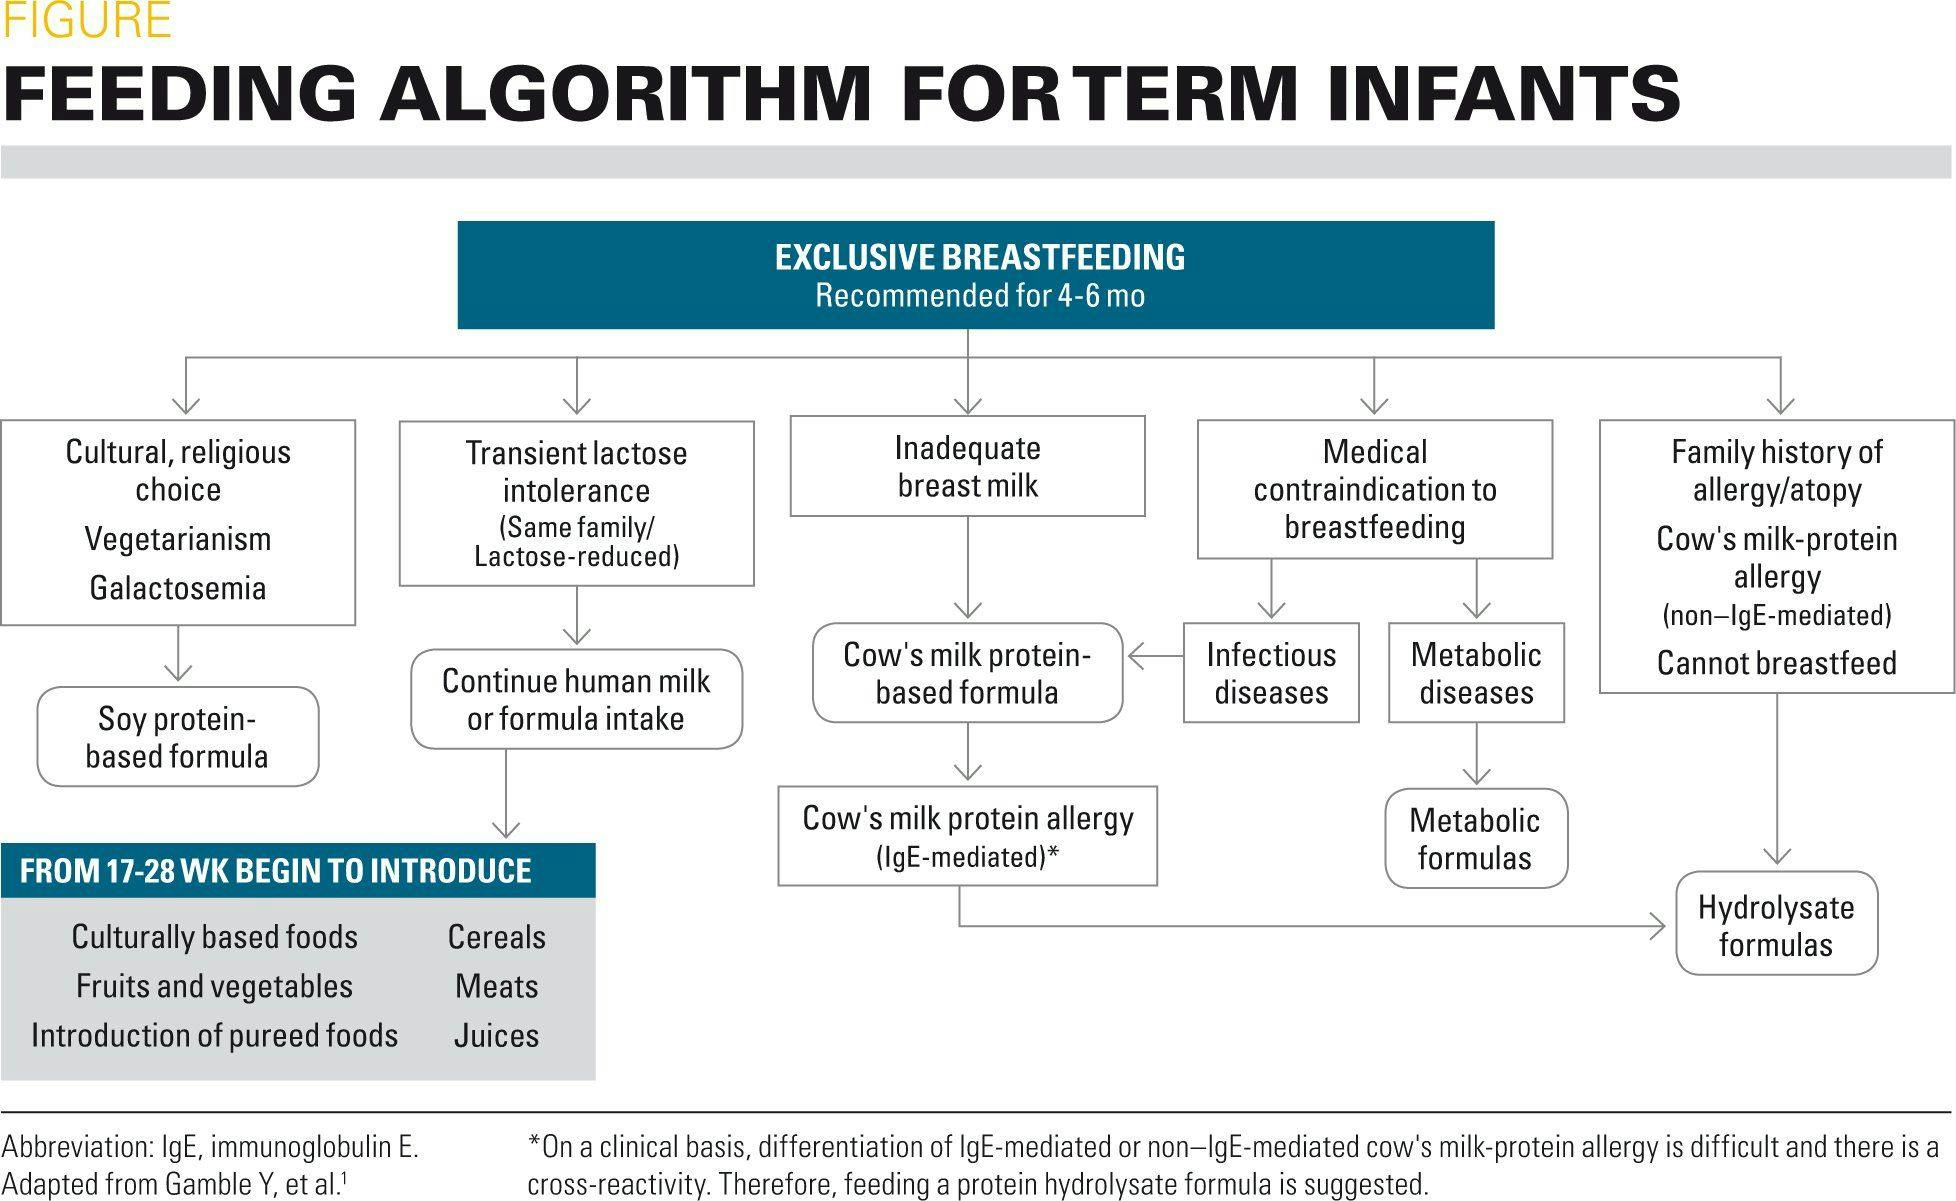 A feeding algorithm for term infants